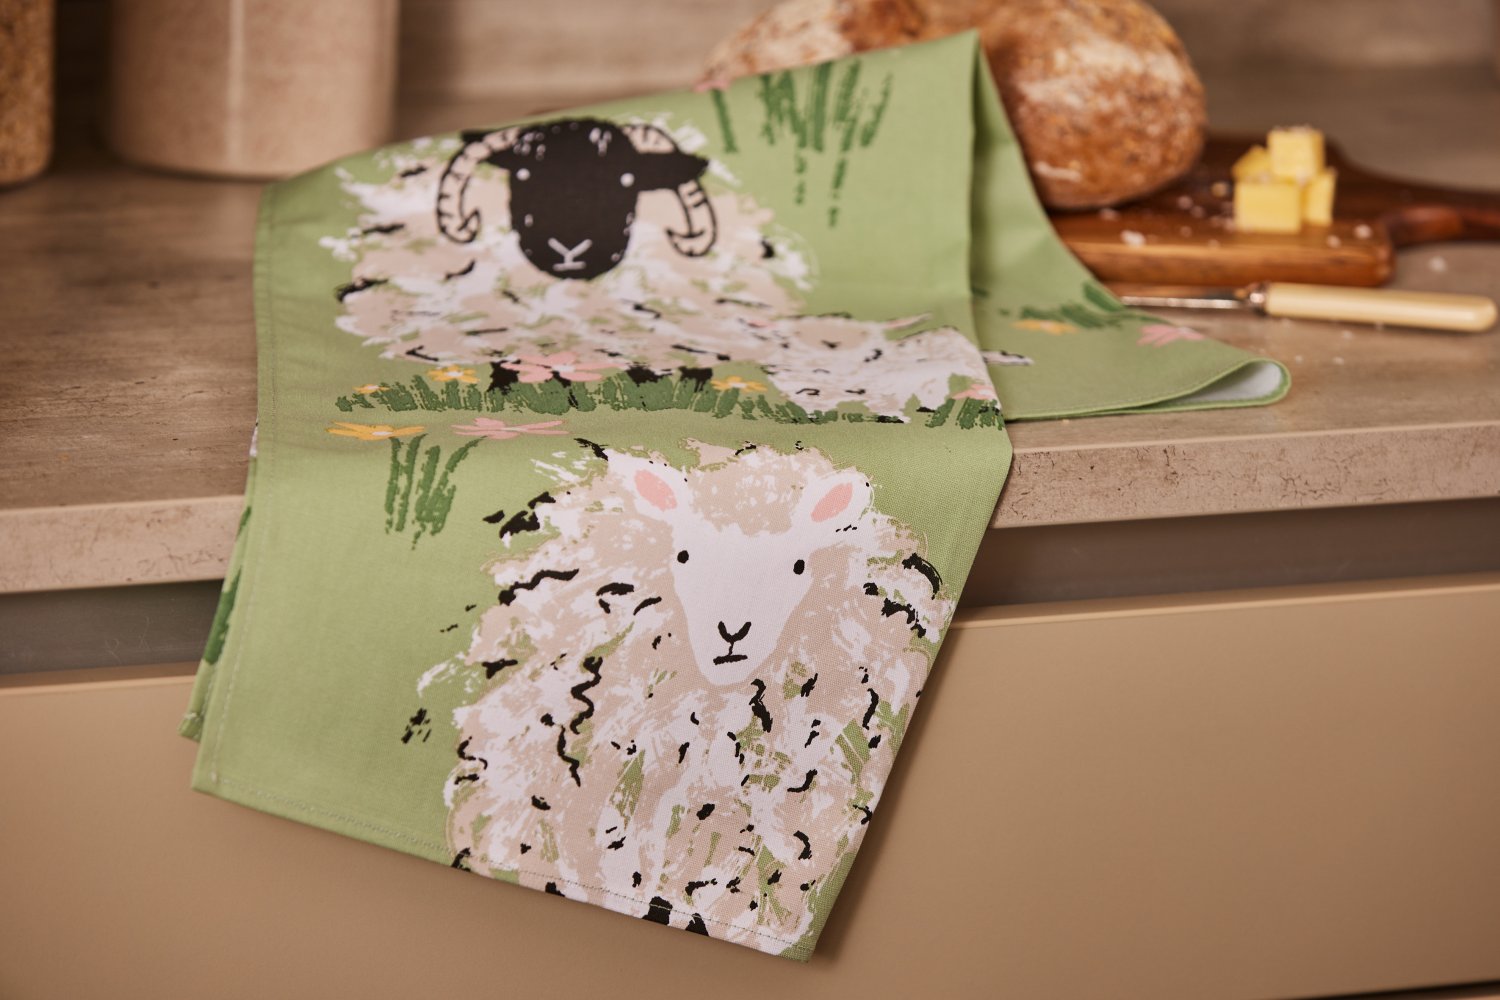 Ulster Weavers, "Woolly Sheep", Printed cotton tea towel.